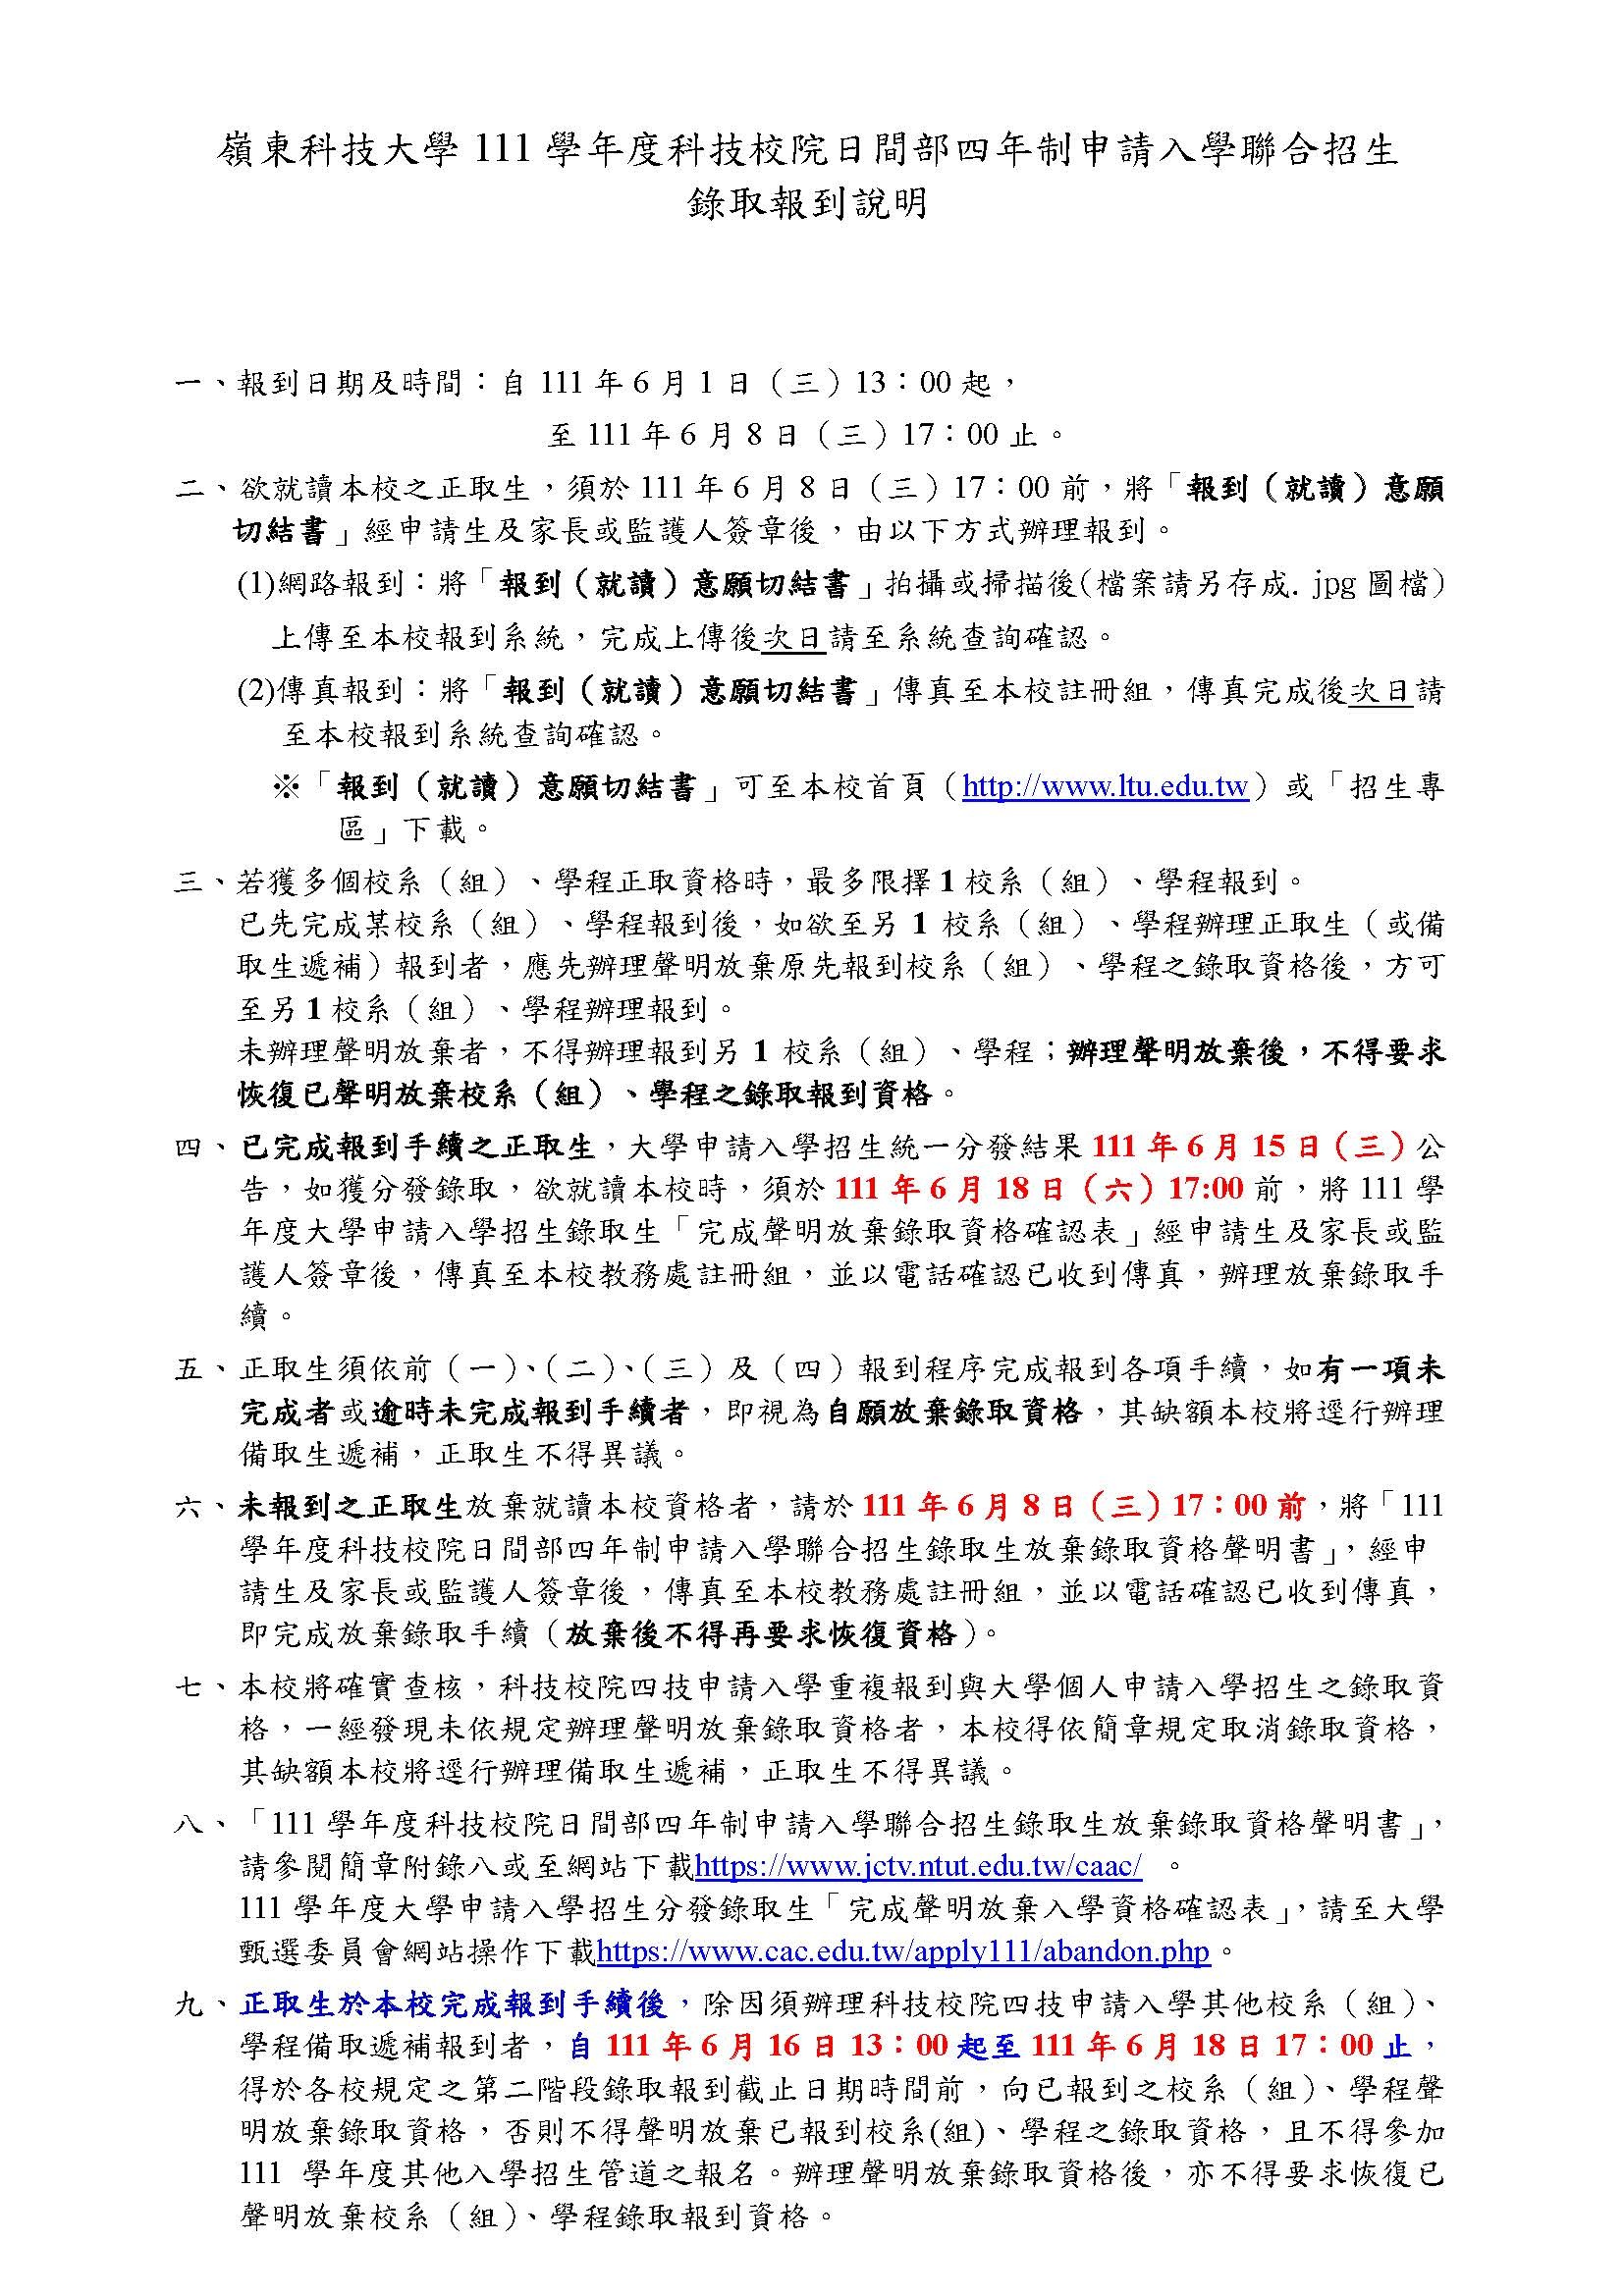  嶺東科技大學111學年度四技申請入學榜單查詢